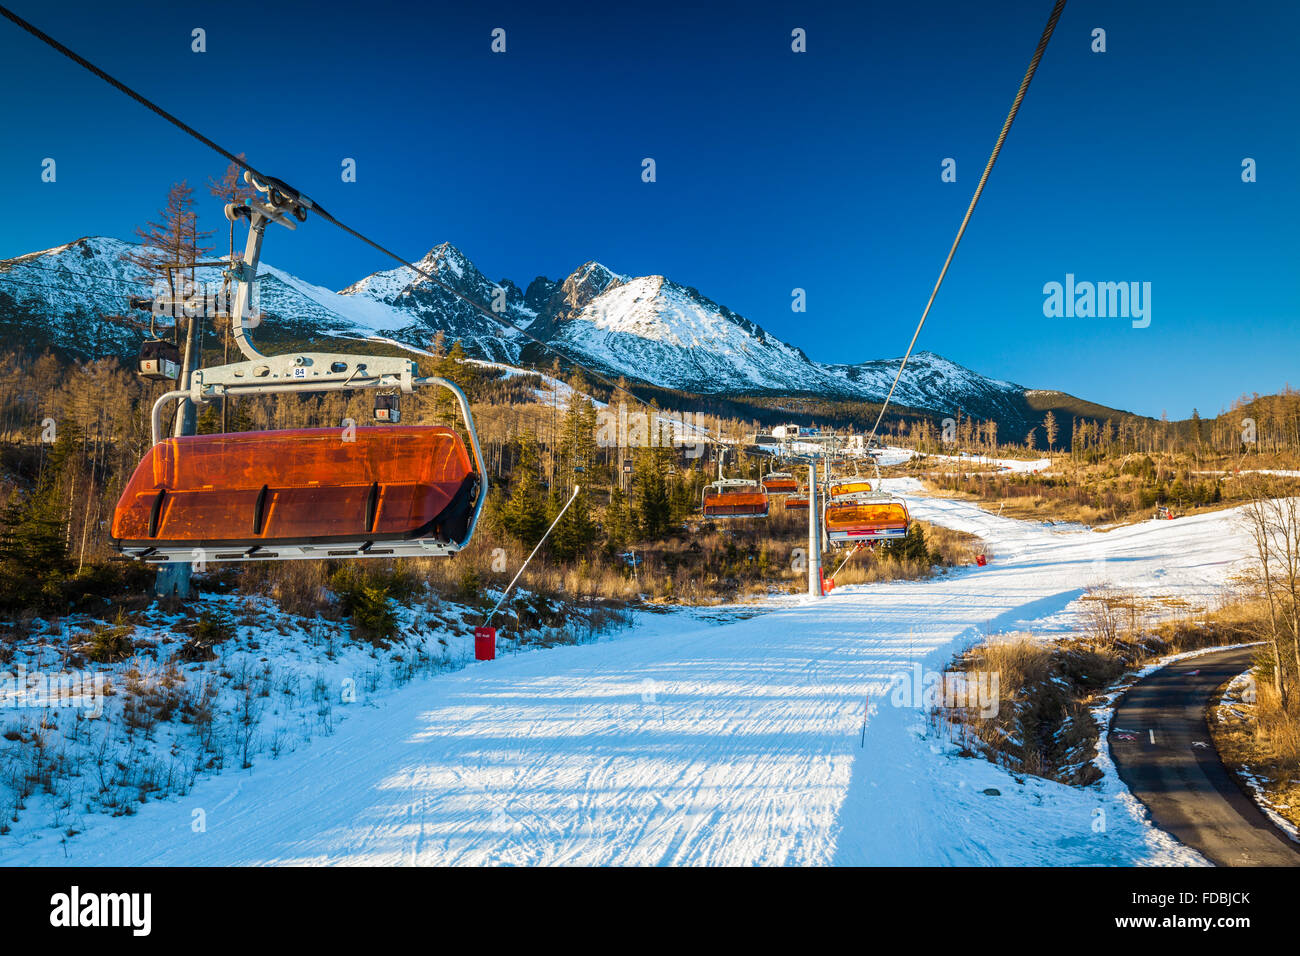 TATRANSKA LOMNICA, Slowakei, 23. Dezember 2015: Seilbahn auf ein beliebtes Skigebiet in Tatranska Lomnica, Tatra, mit 6 km lang zu tun Stockfoto